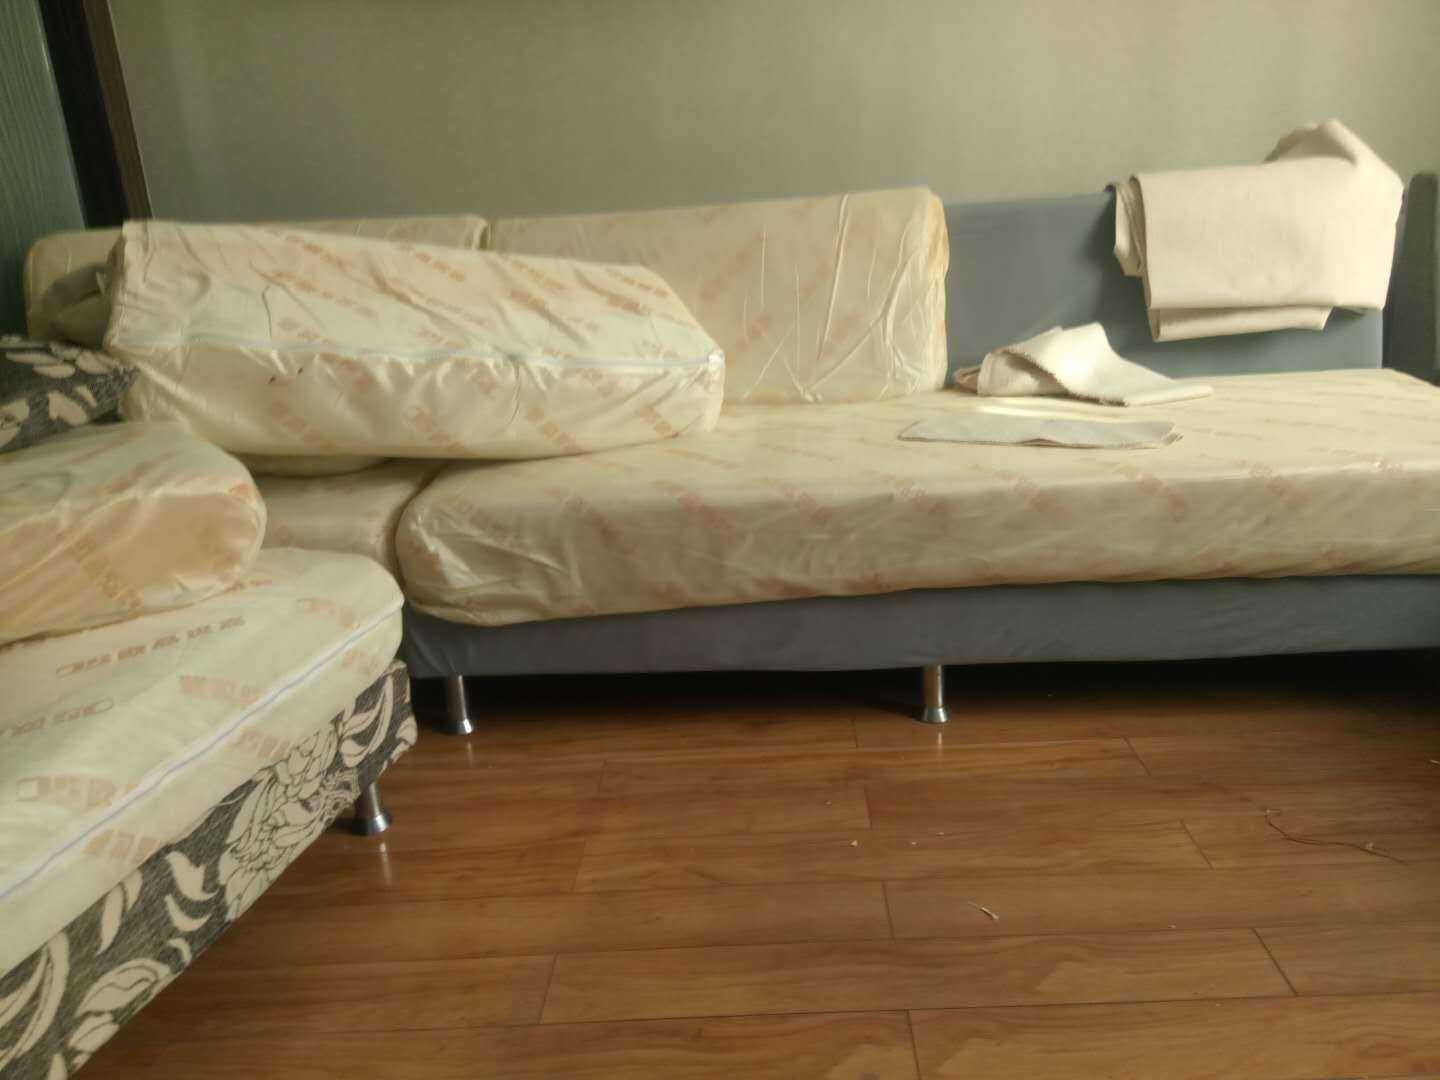 今天我们来说说旧沙发的沙发套要如何翻新